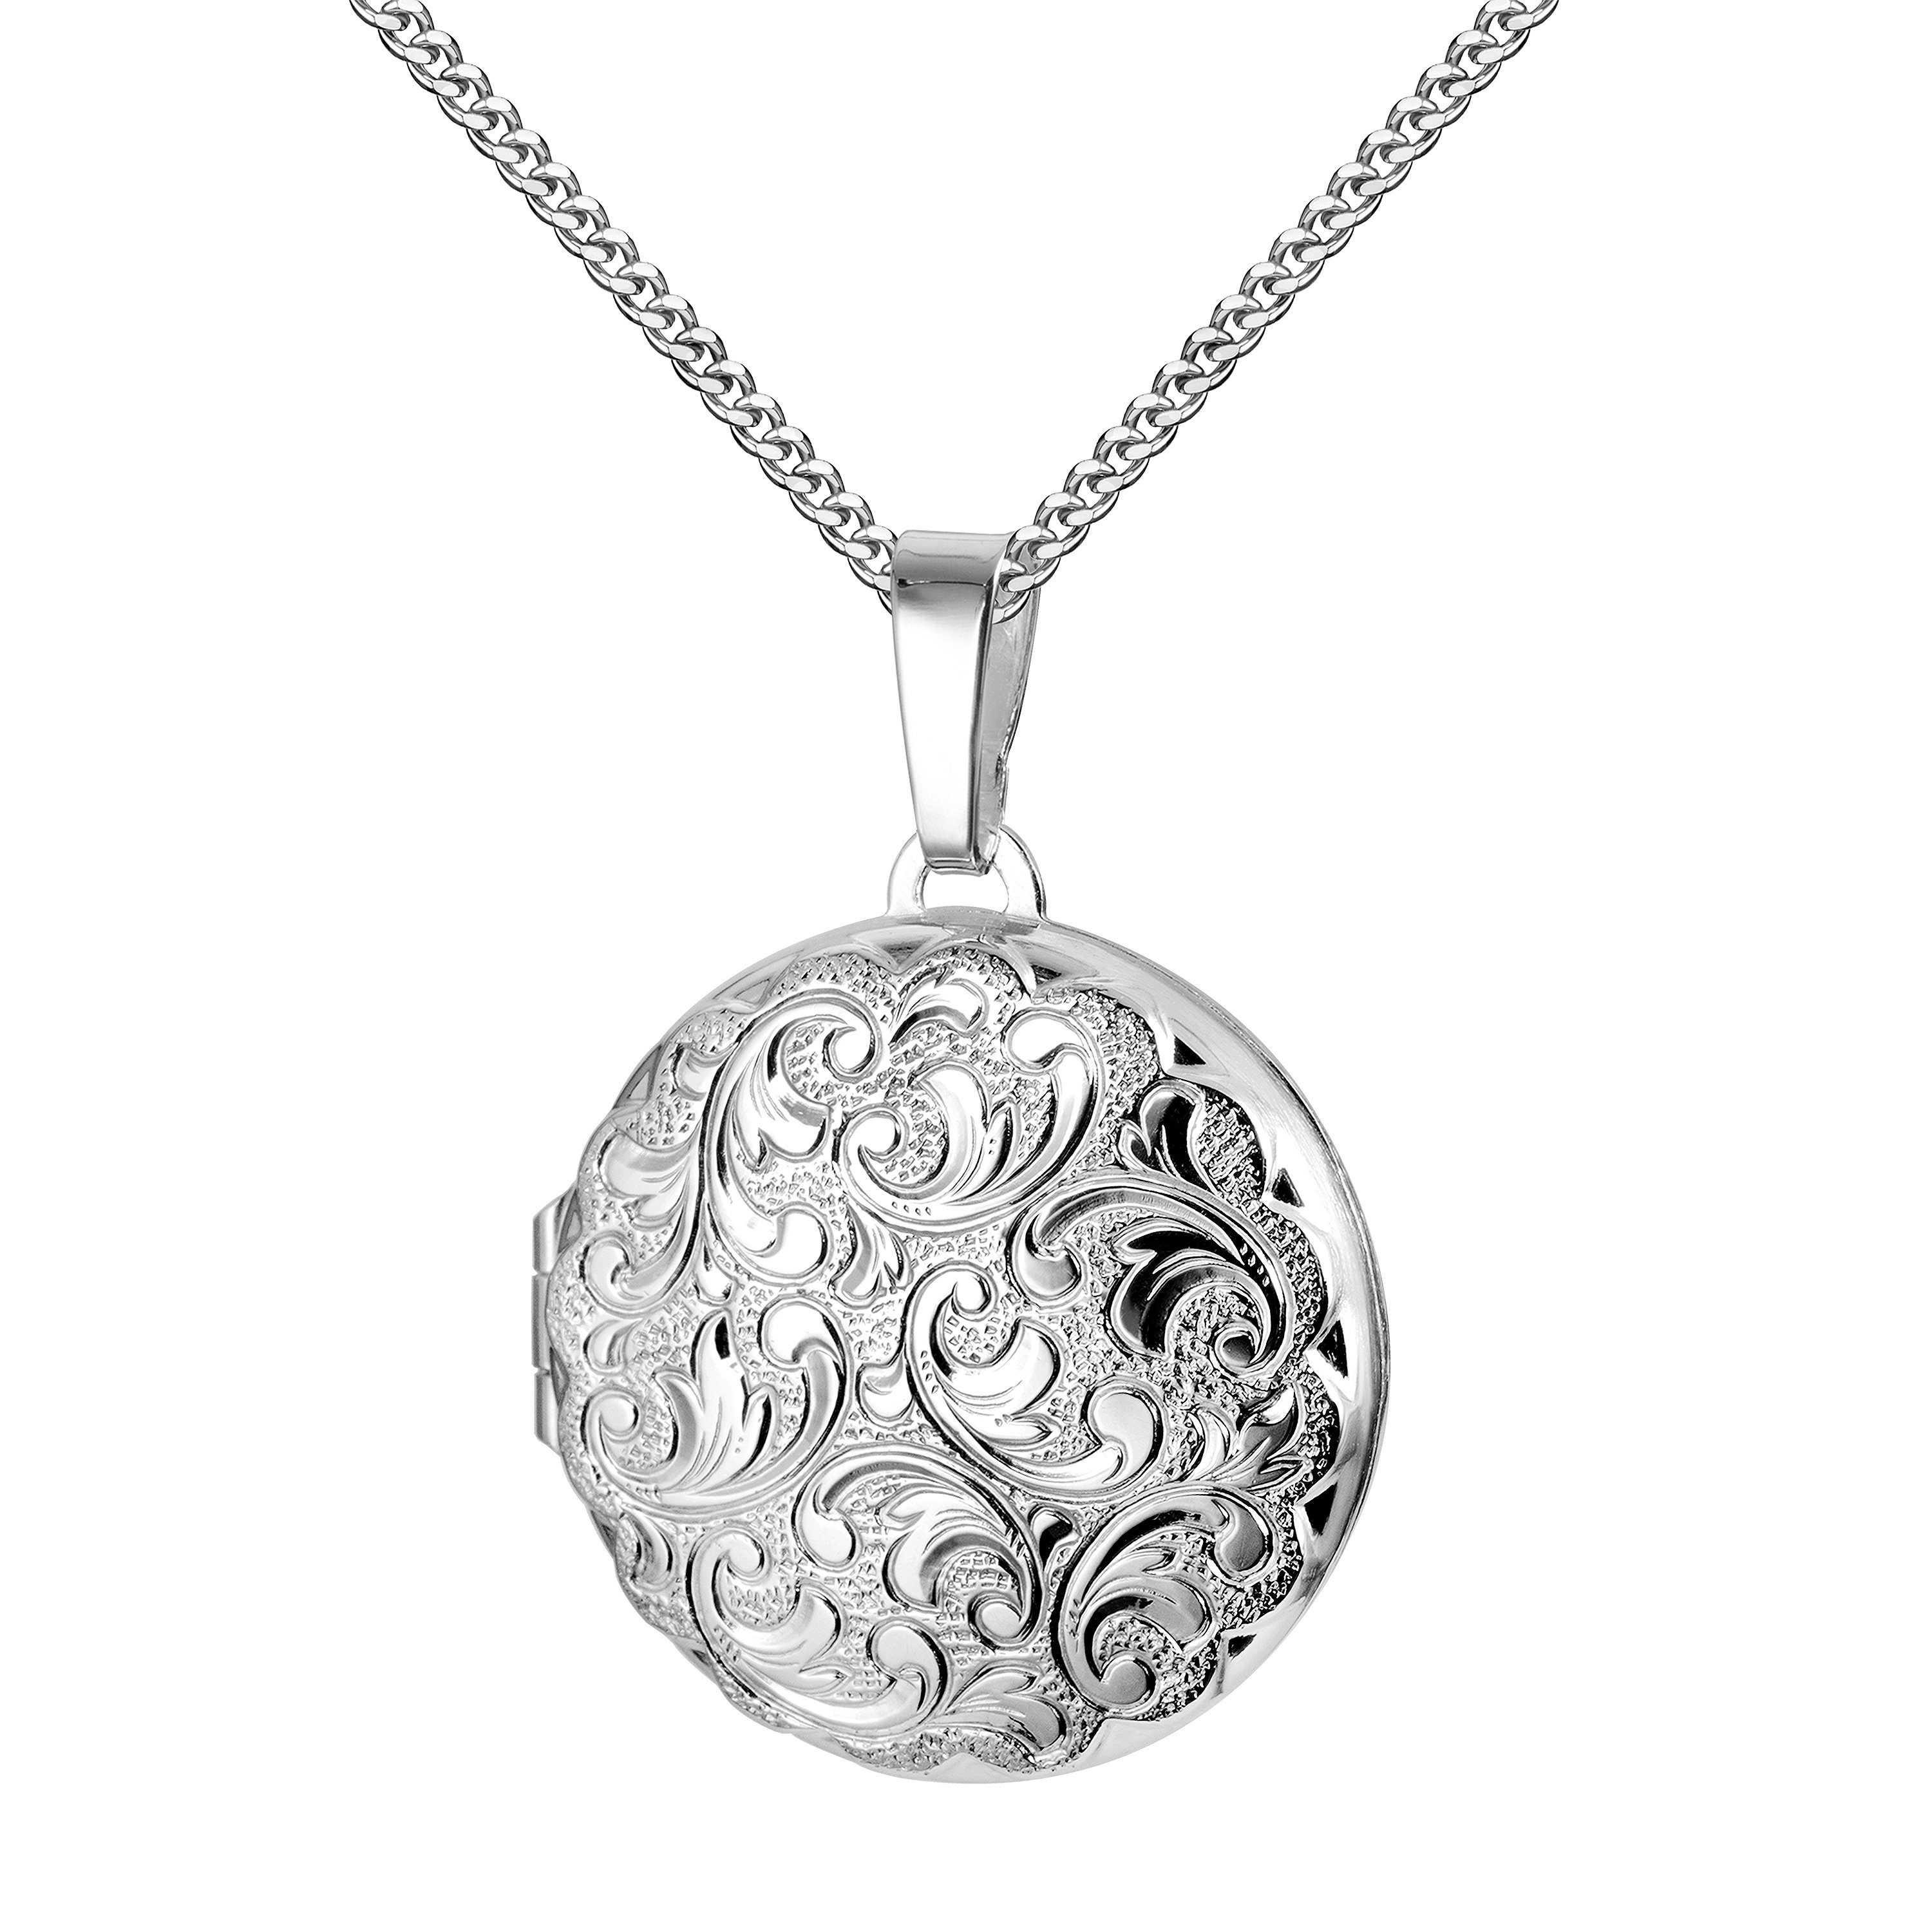 JEVELION Amulett Medaillon Anhänger Silber 925 rund Ornament-Verzierung für 2 Bilder (Fotomedaillon, für Damen und Mädchen), Mit Kette Sterlingsilber - Länge wählbar 36 - 70 cm oder ohne Kette.